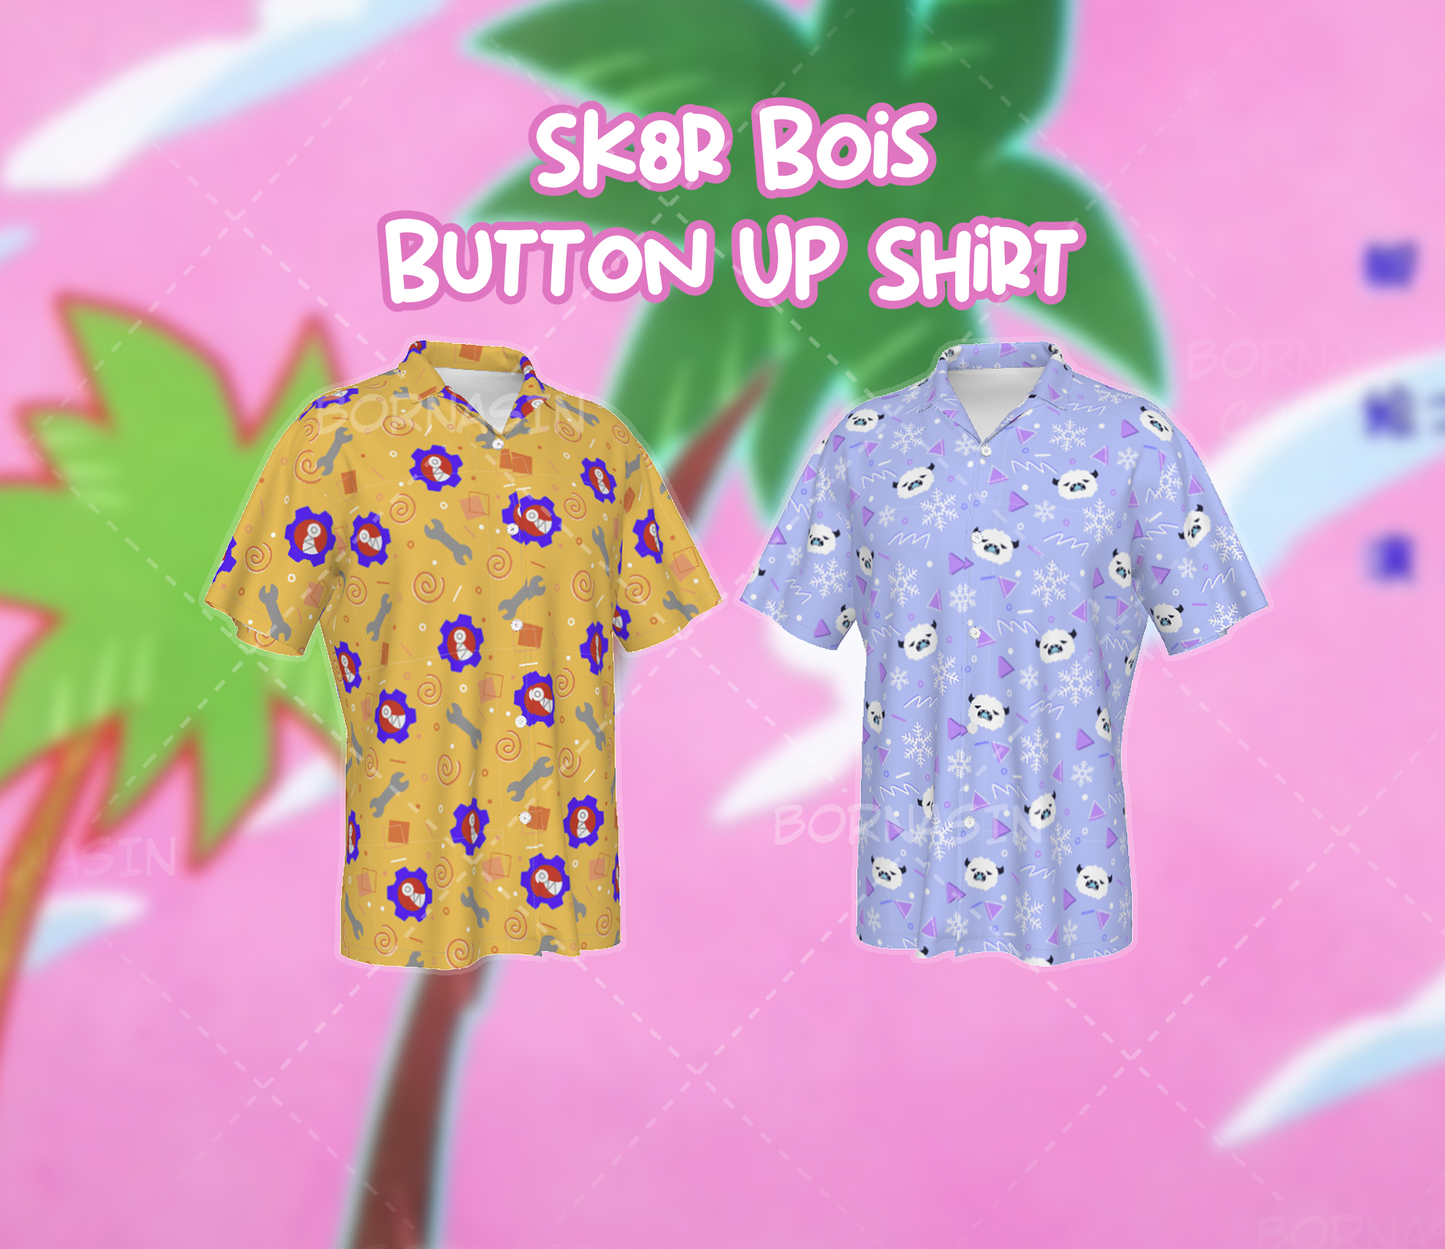 Sk8r Bois Button Up Shirt